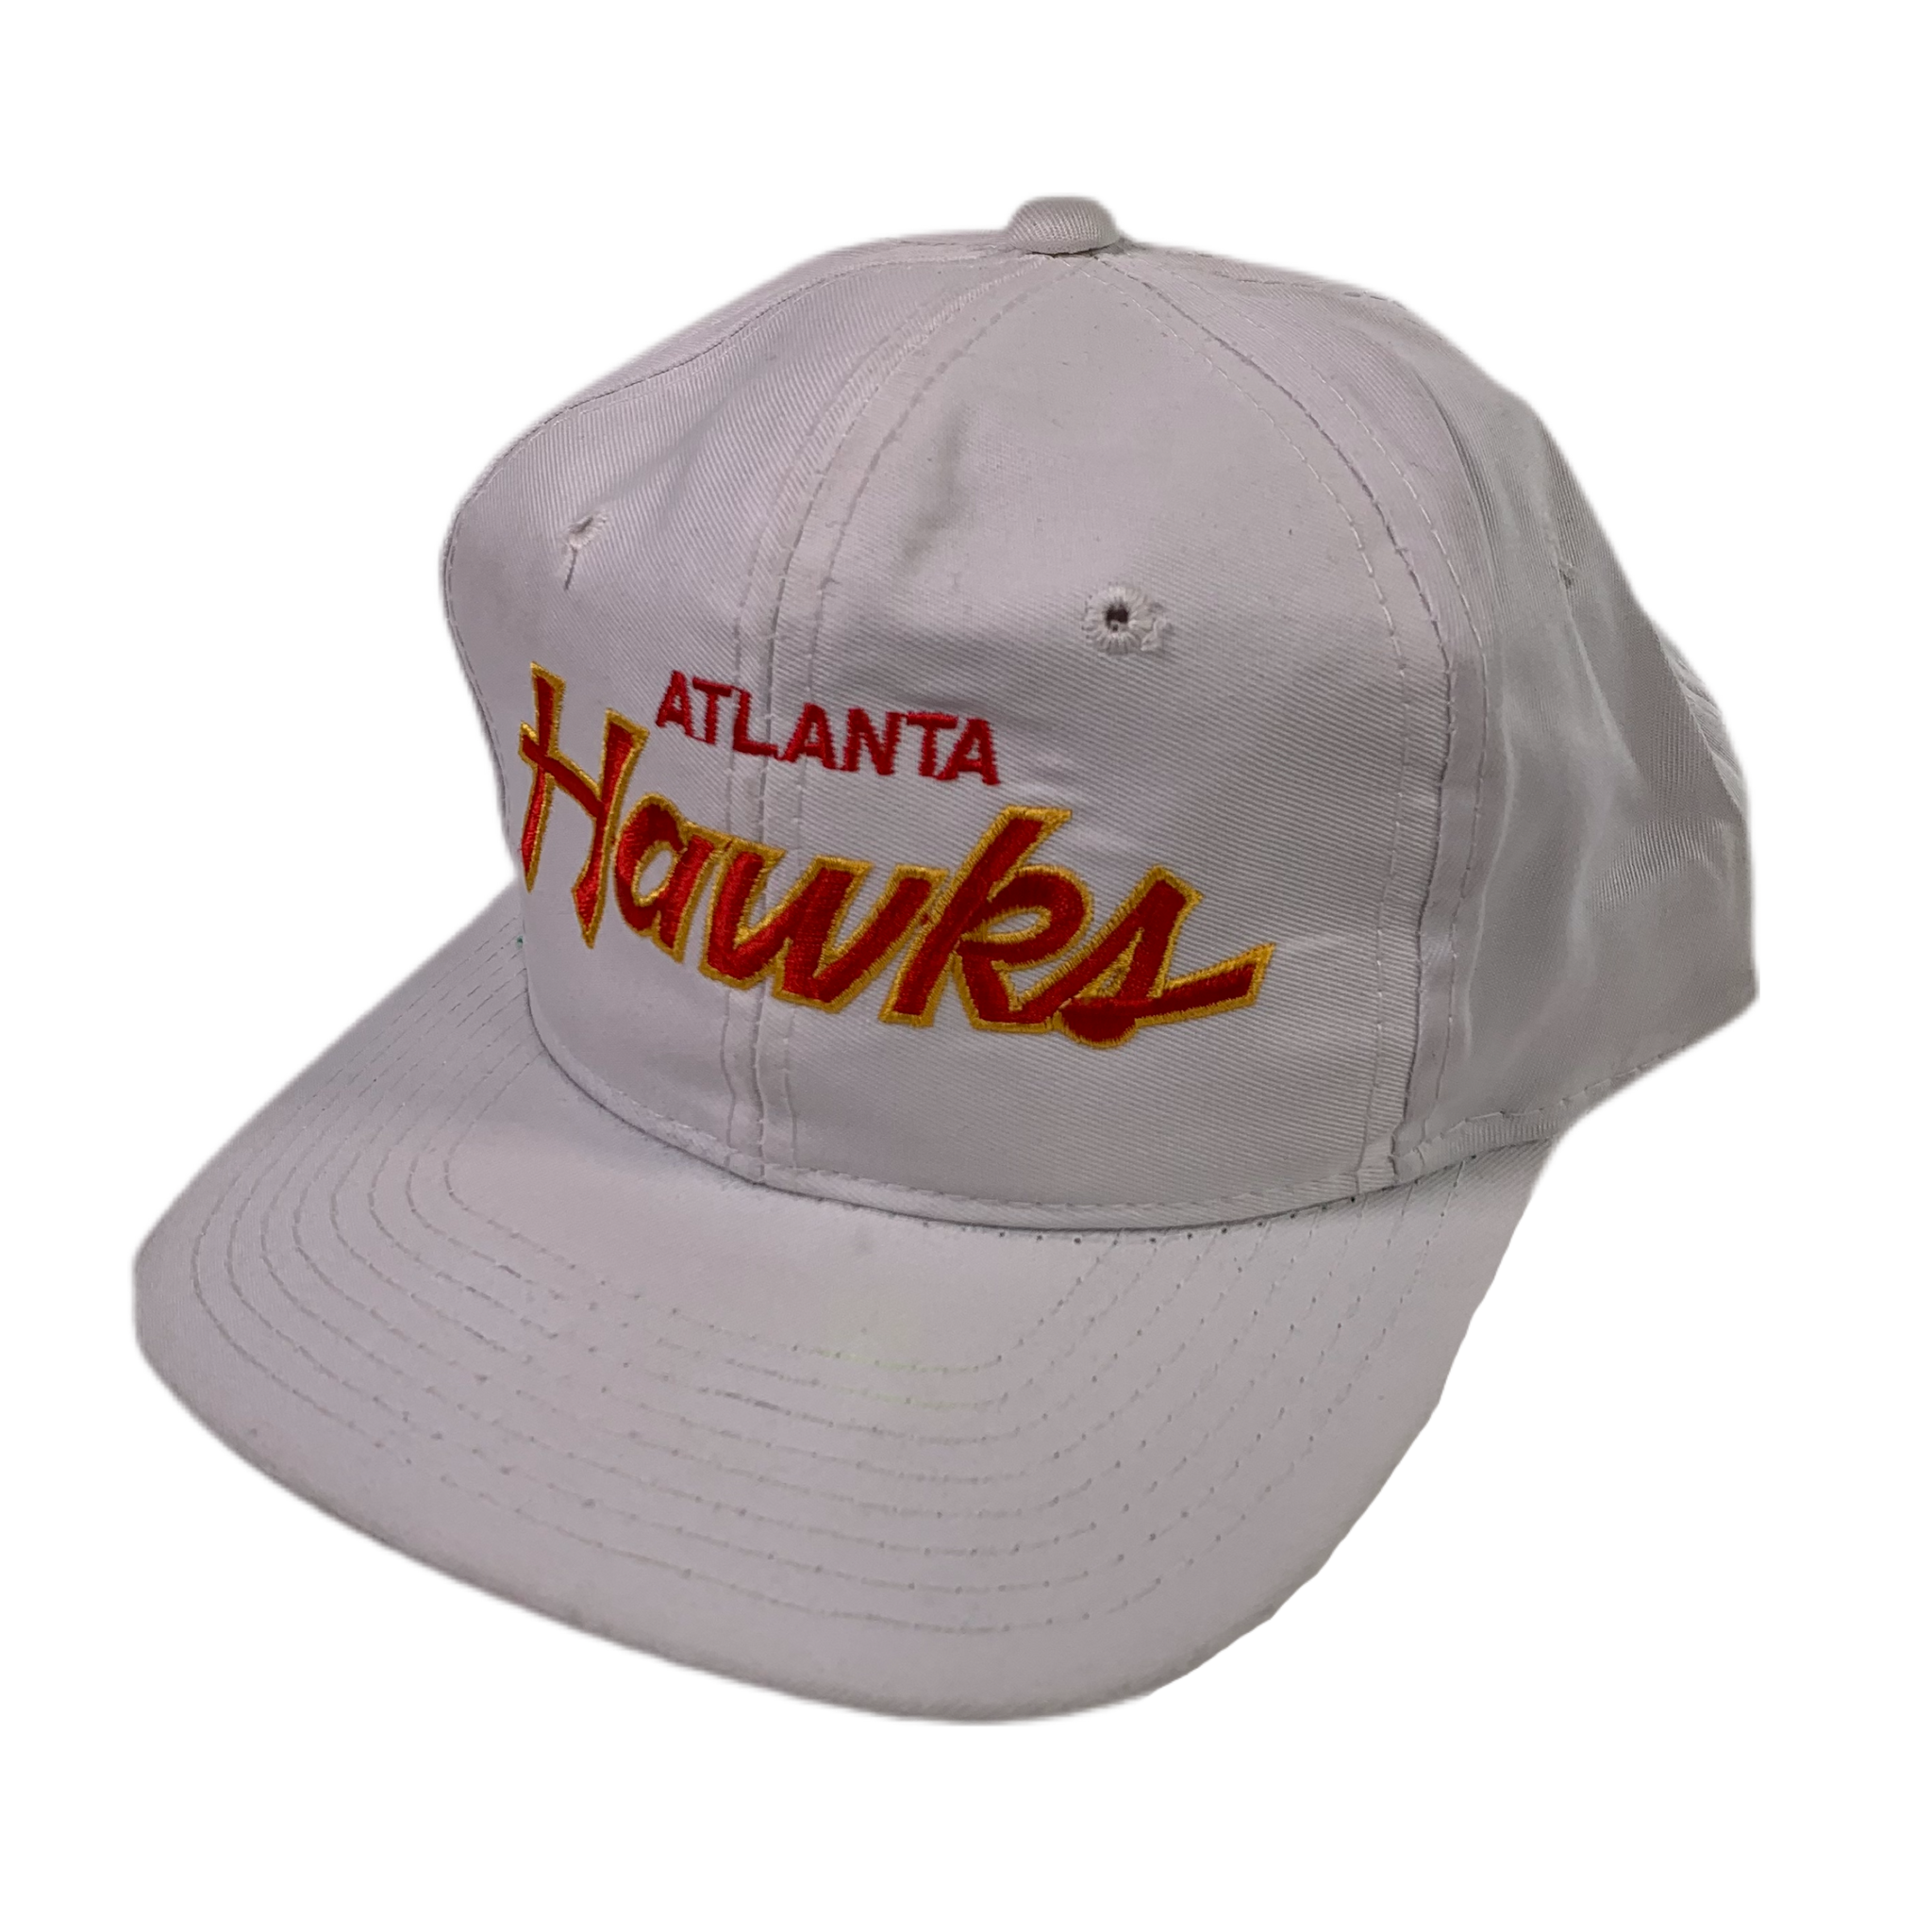 Atlanta Hawks Gear, Hawks Jerseys, Store, Hawks Pro Shop, Apparel